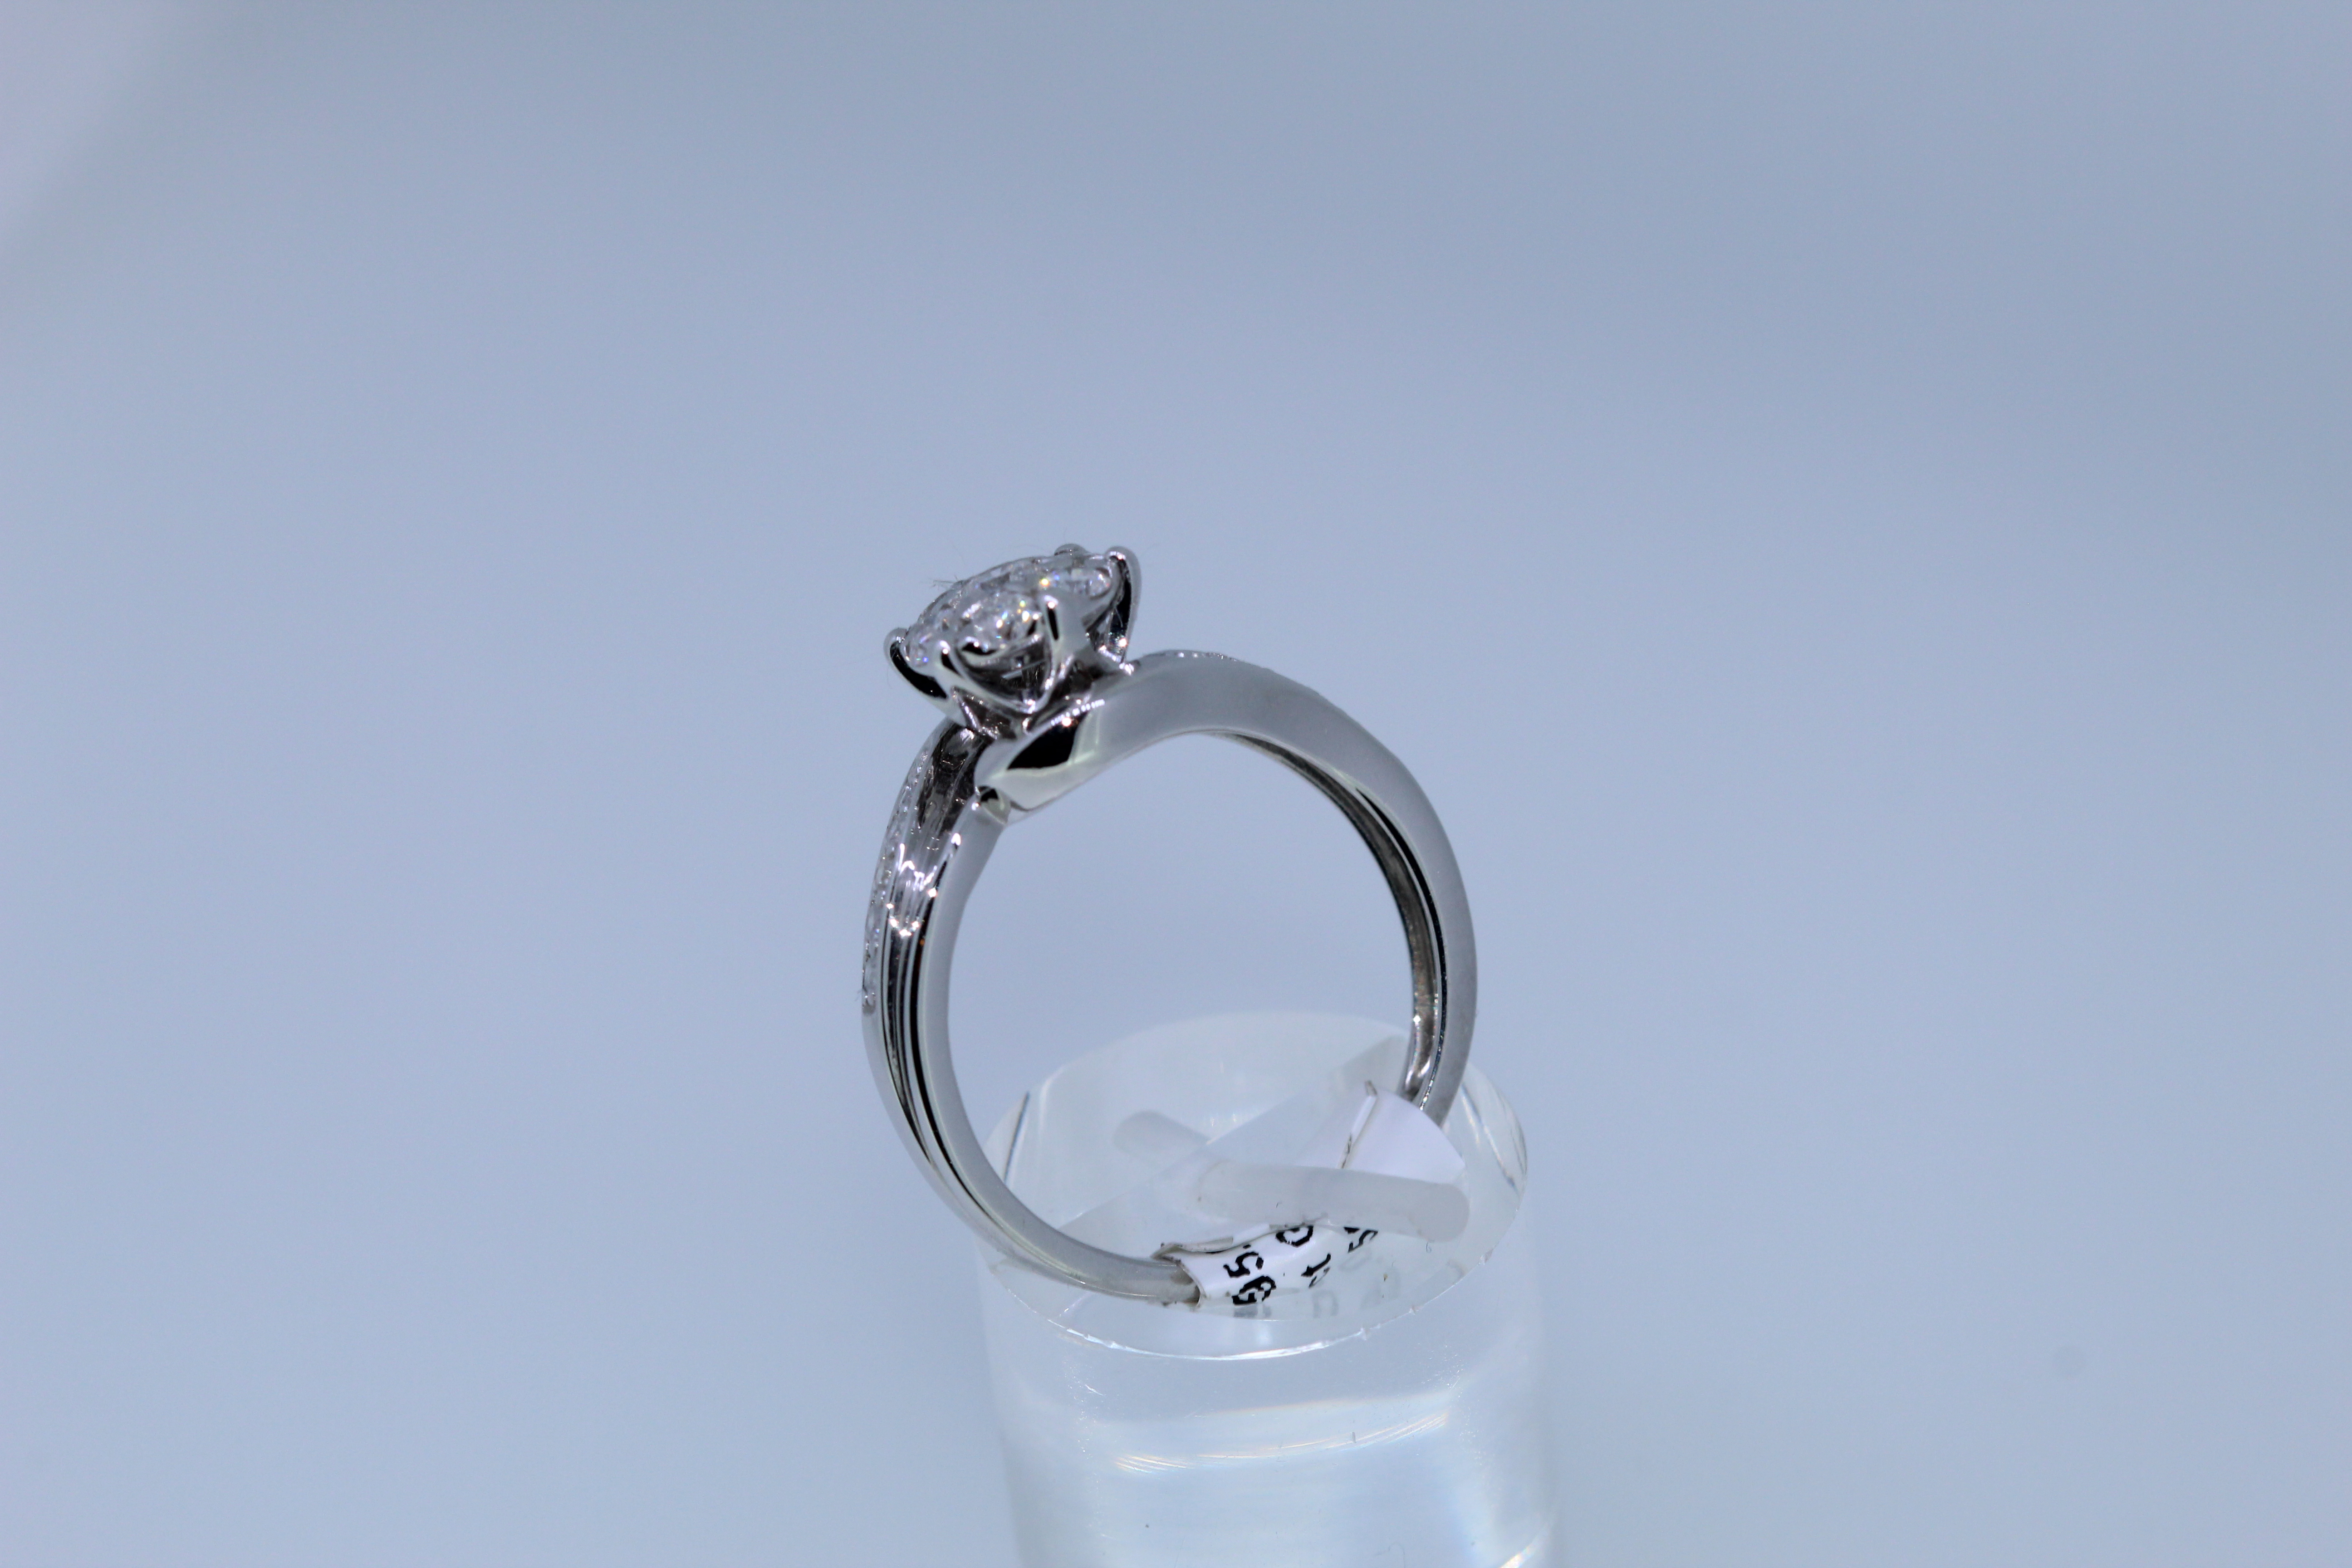 9k White Gold Diamond Cluster Ring - Image 2 of 4